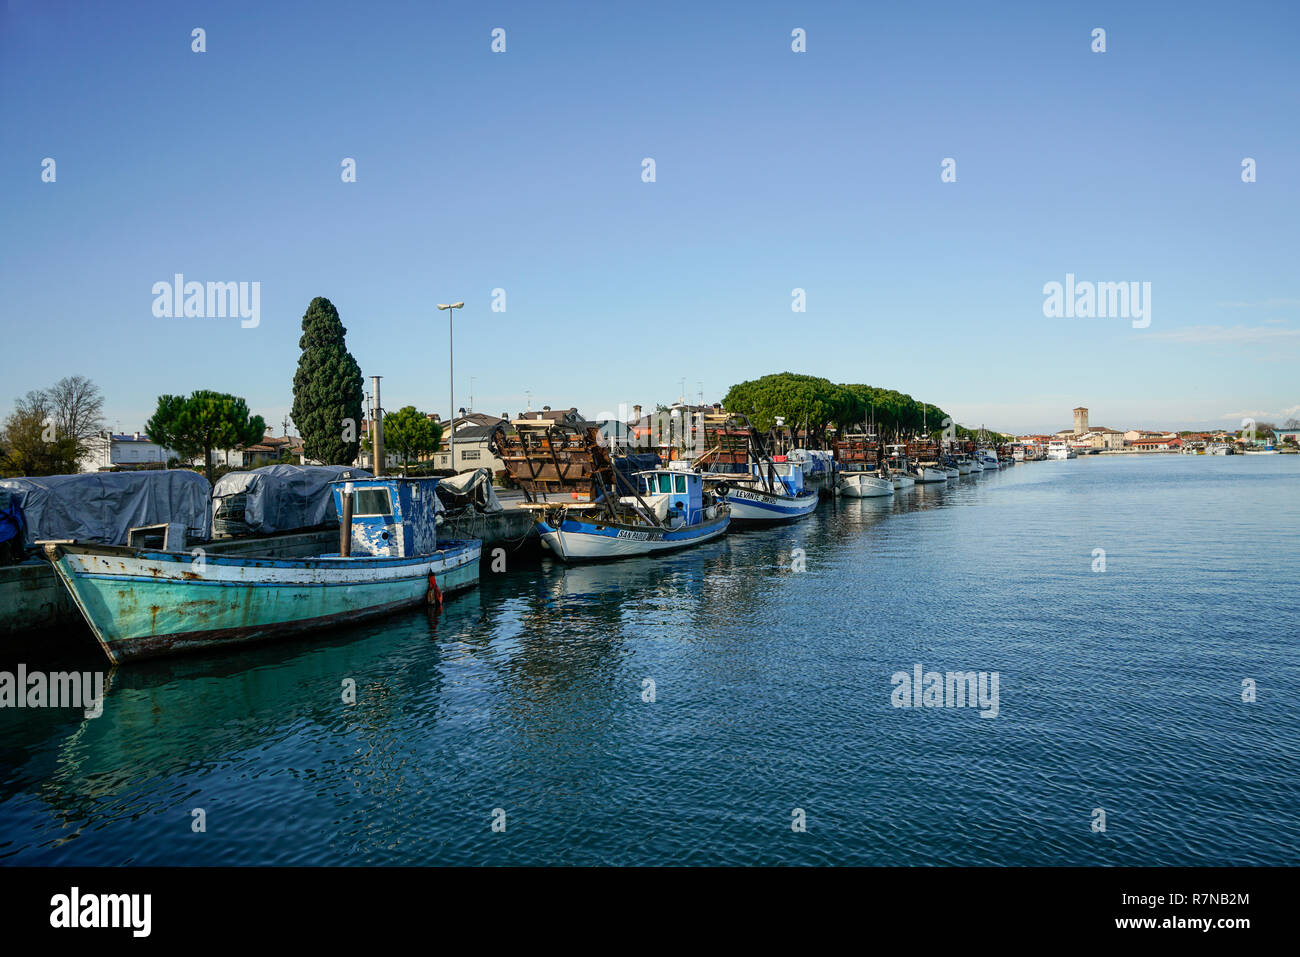 Some fishing boats moored on the pier of the port of Marano Lagunare, Friuli Venezia Giulia Region, Italy Stock Photo